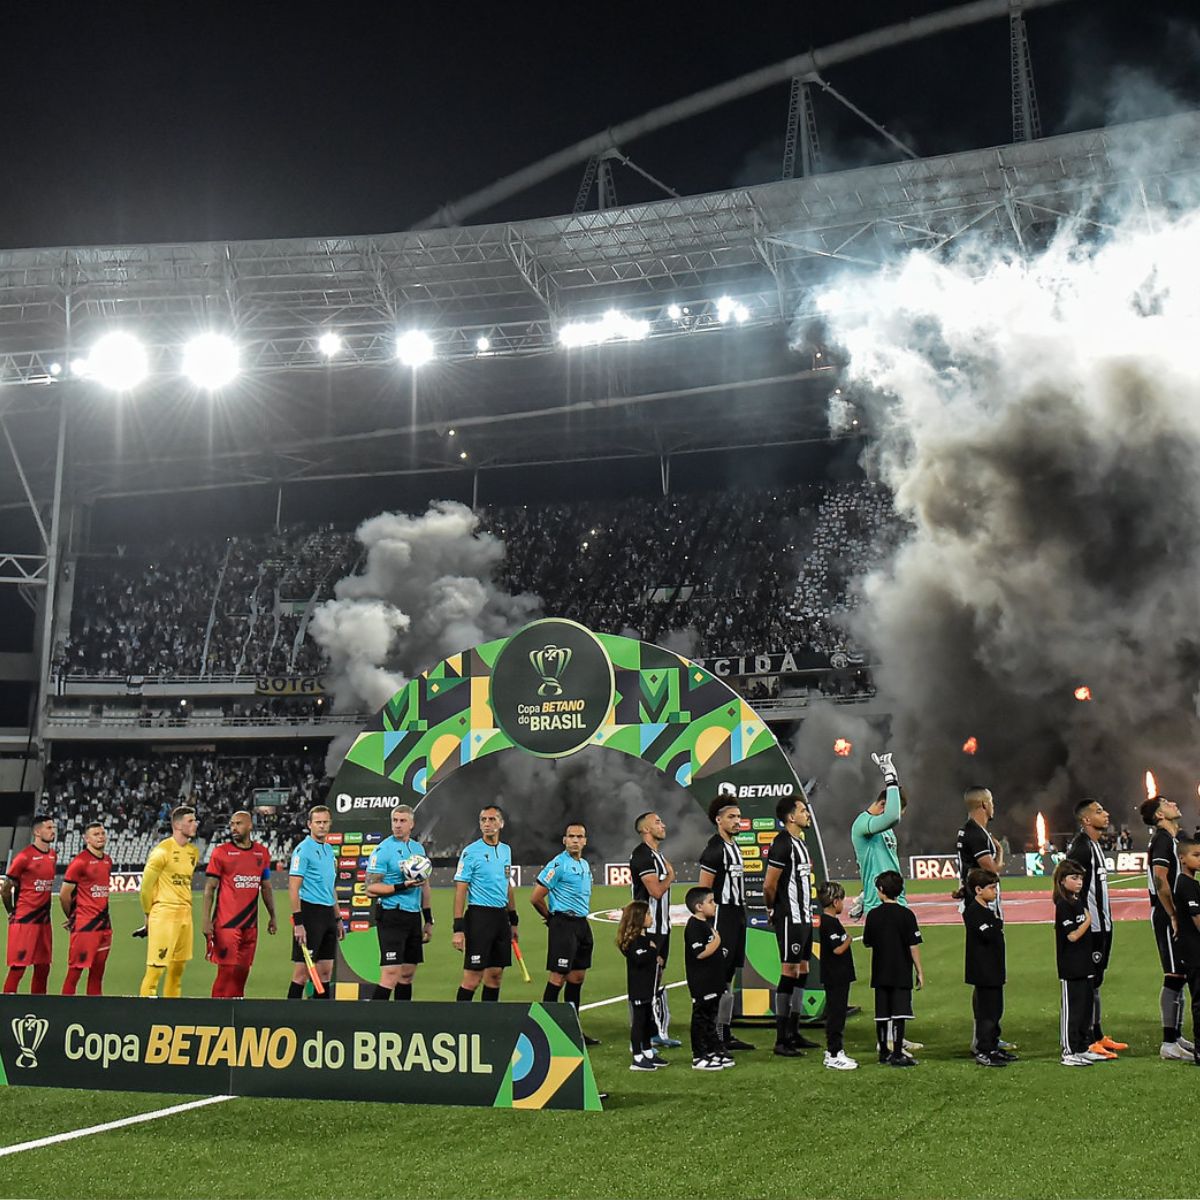  Botafogo x Athletico Nilton Santos 